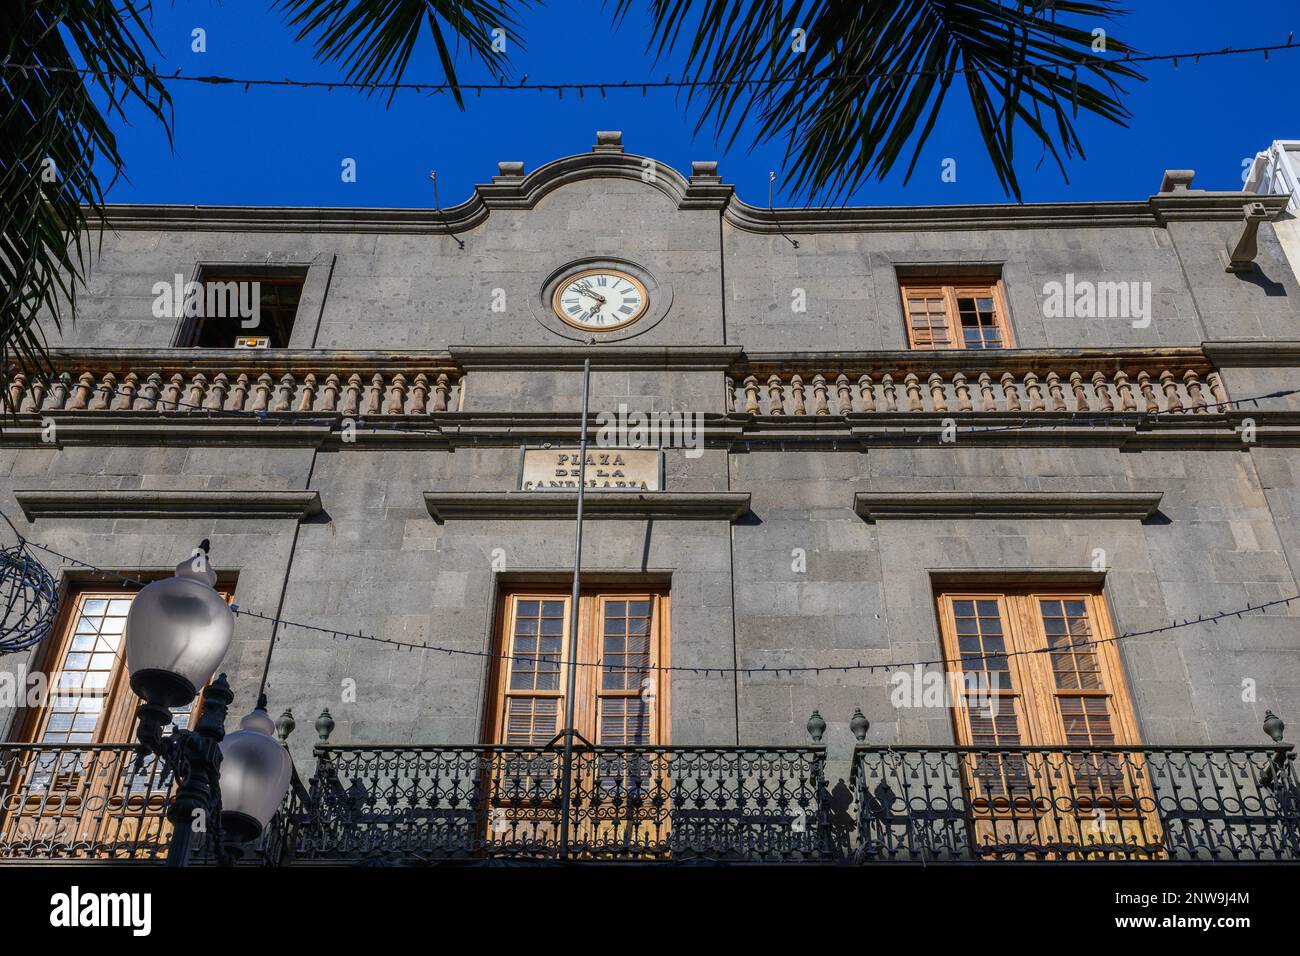 La facciata neoclassica e barocca delle canarie del Palazzo carta del XVIII secolo di Francisco de la Pierre in Plaza de la Candelaria a Santra Cruz, Tenerife Foto Stock